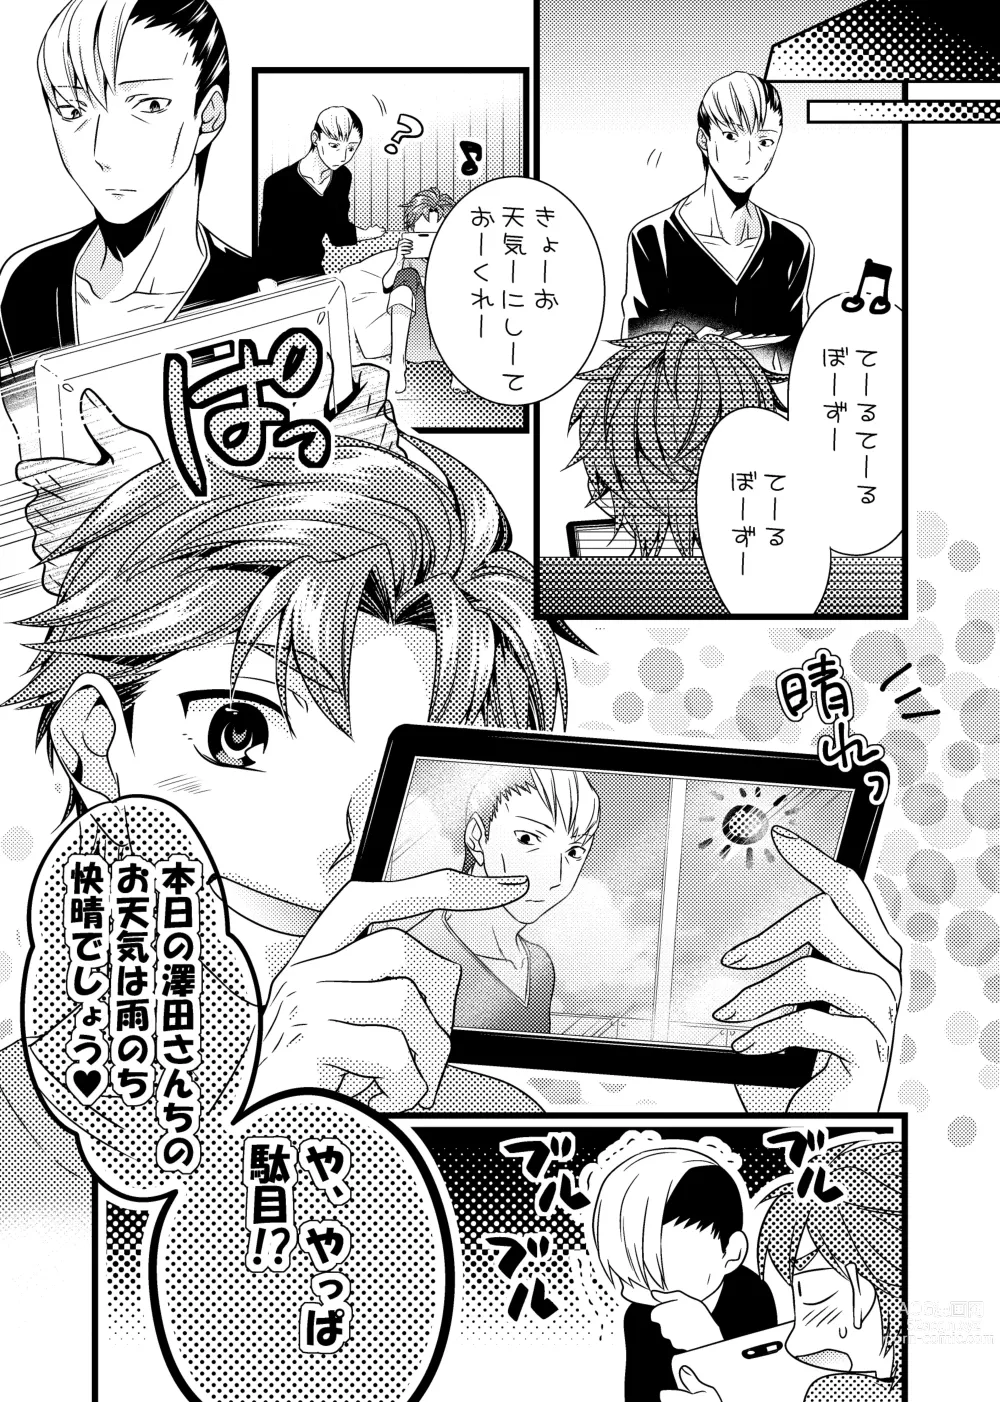 Page 14 of doujinshi sonna konnano futarigoto